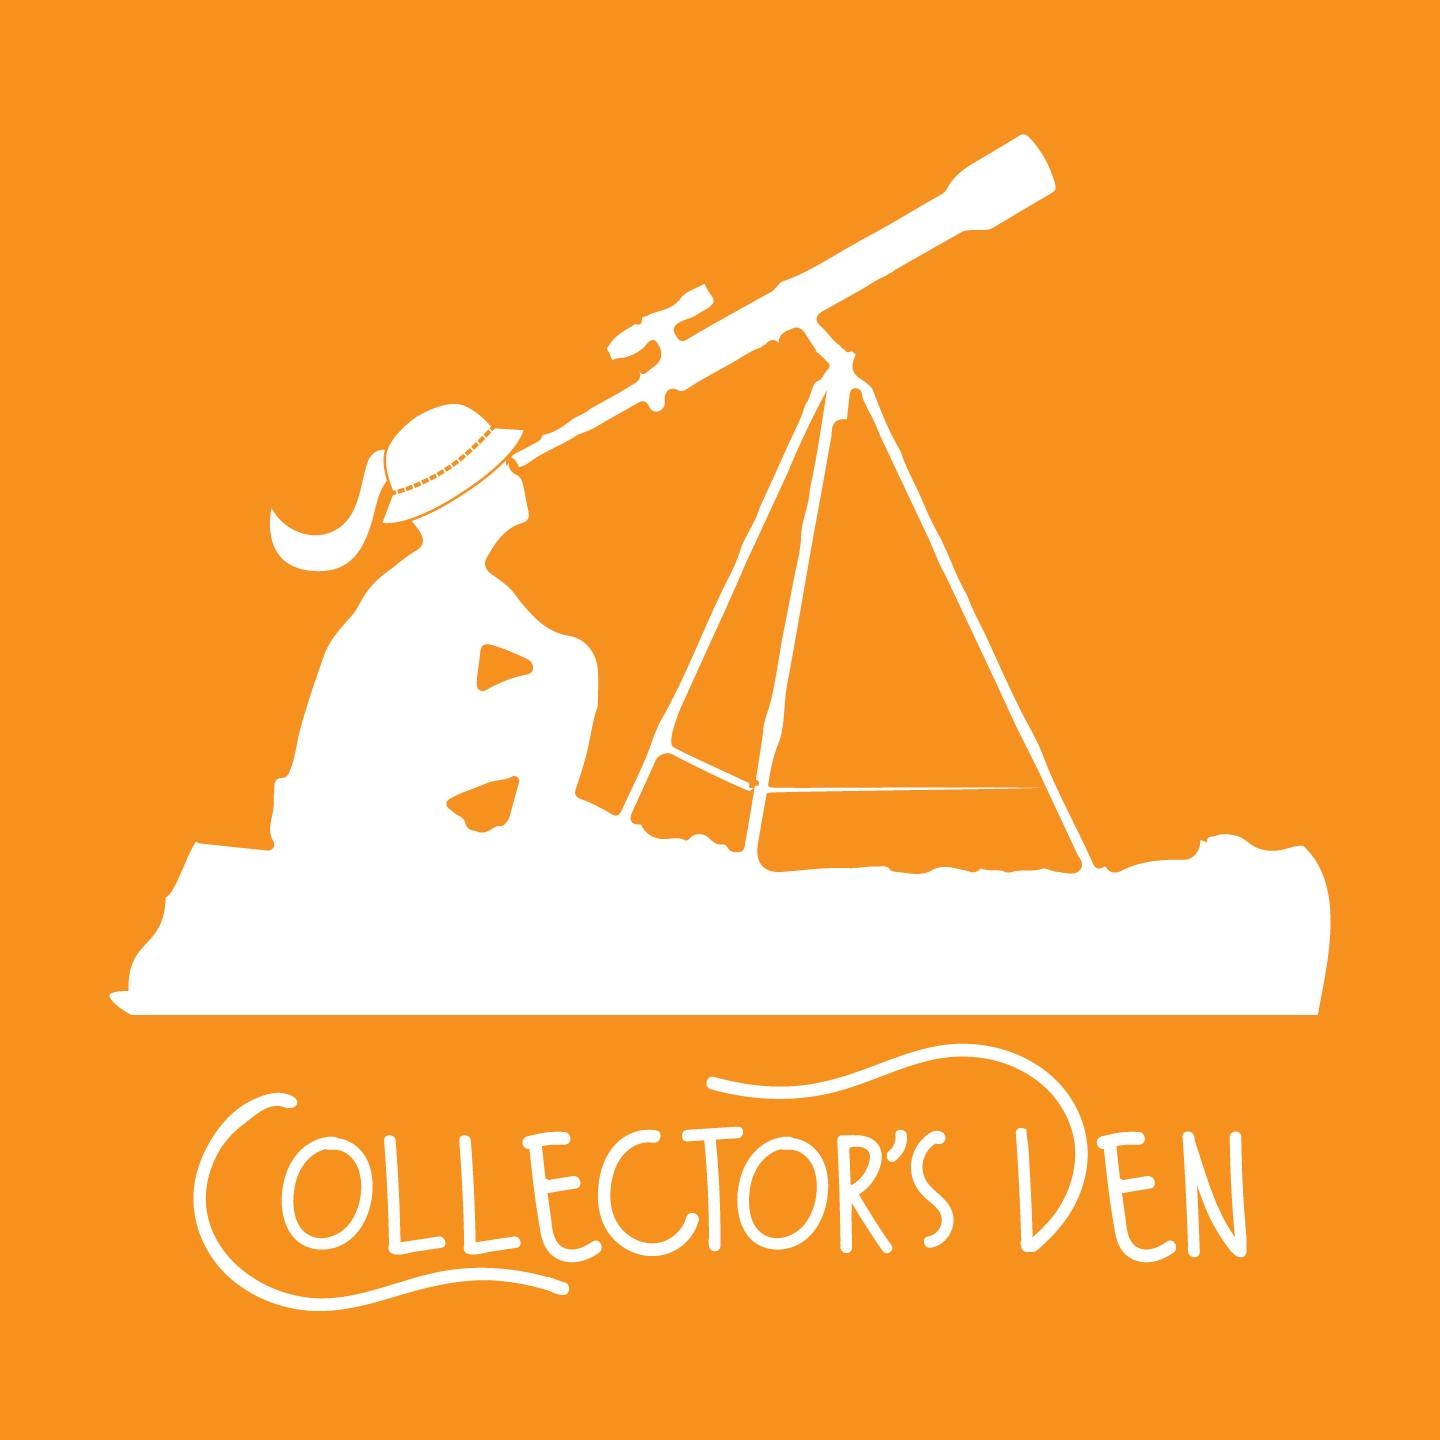 Collector’s Den